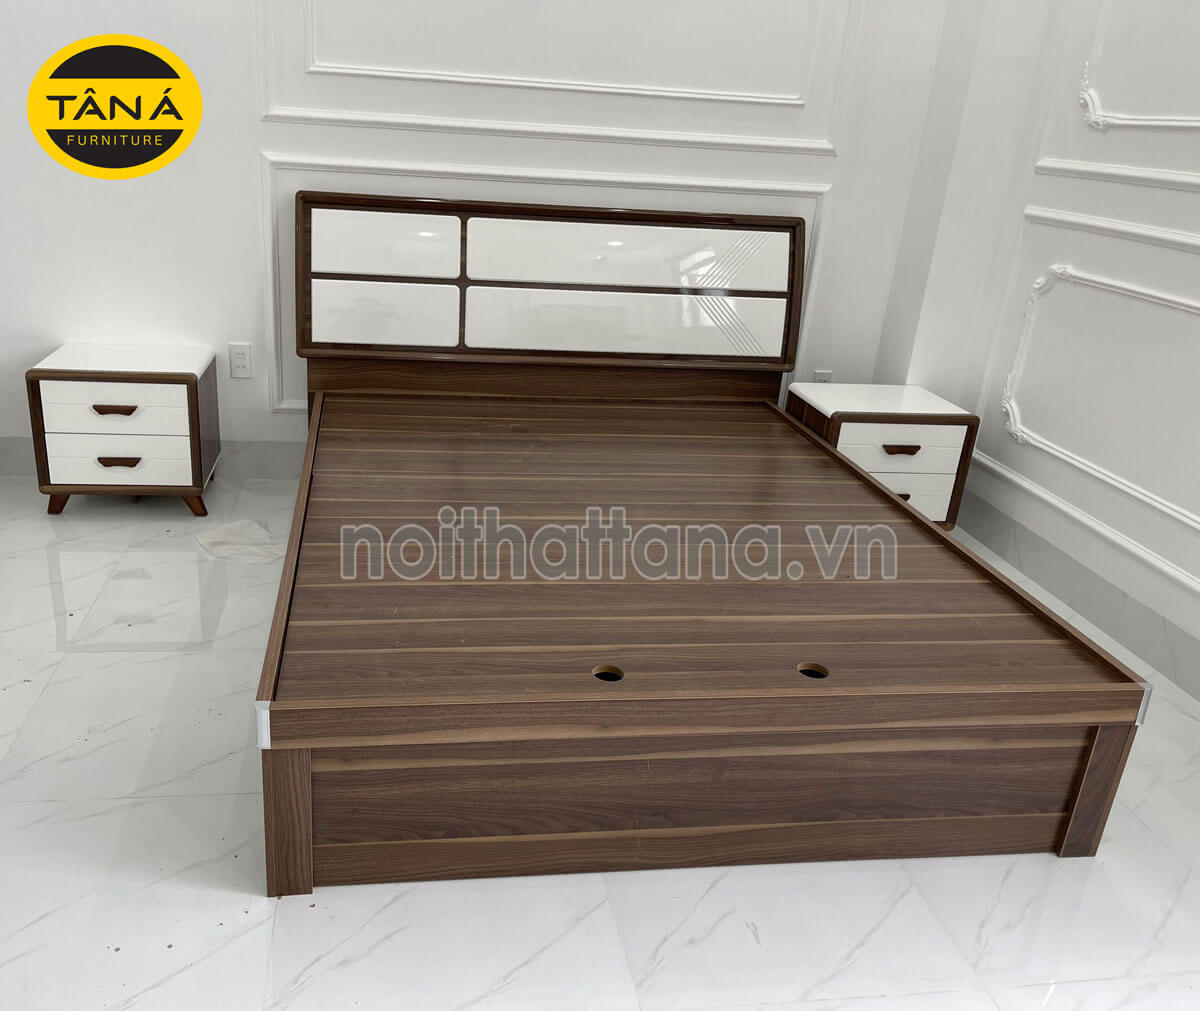 Kích thước giường ngủ gỗ công nghiệp của gia đình 